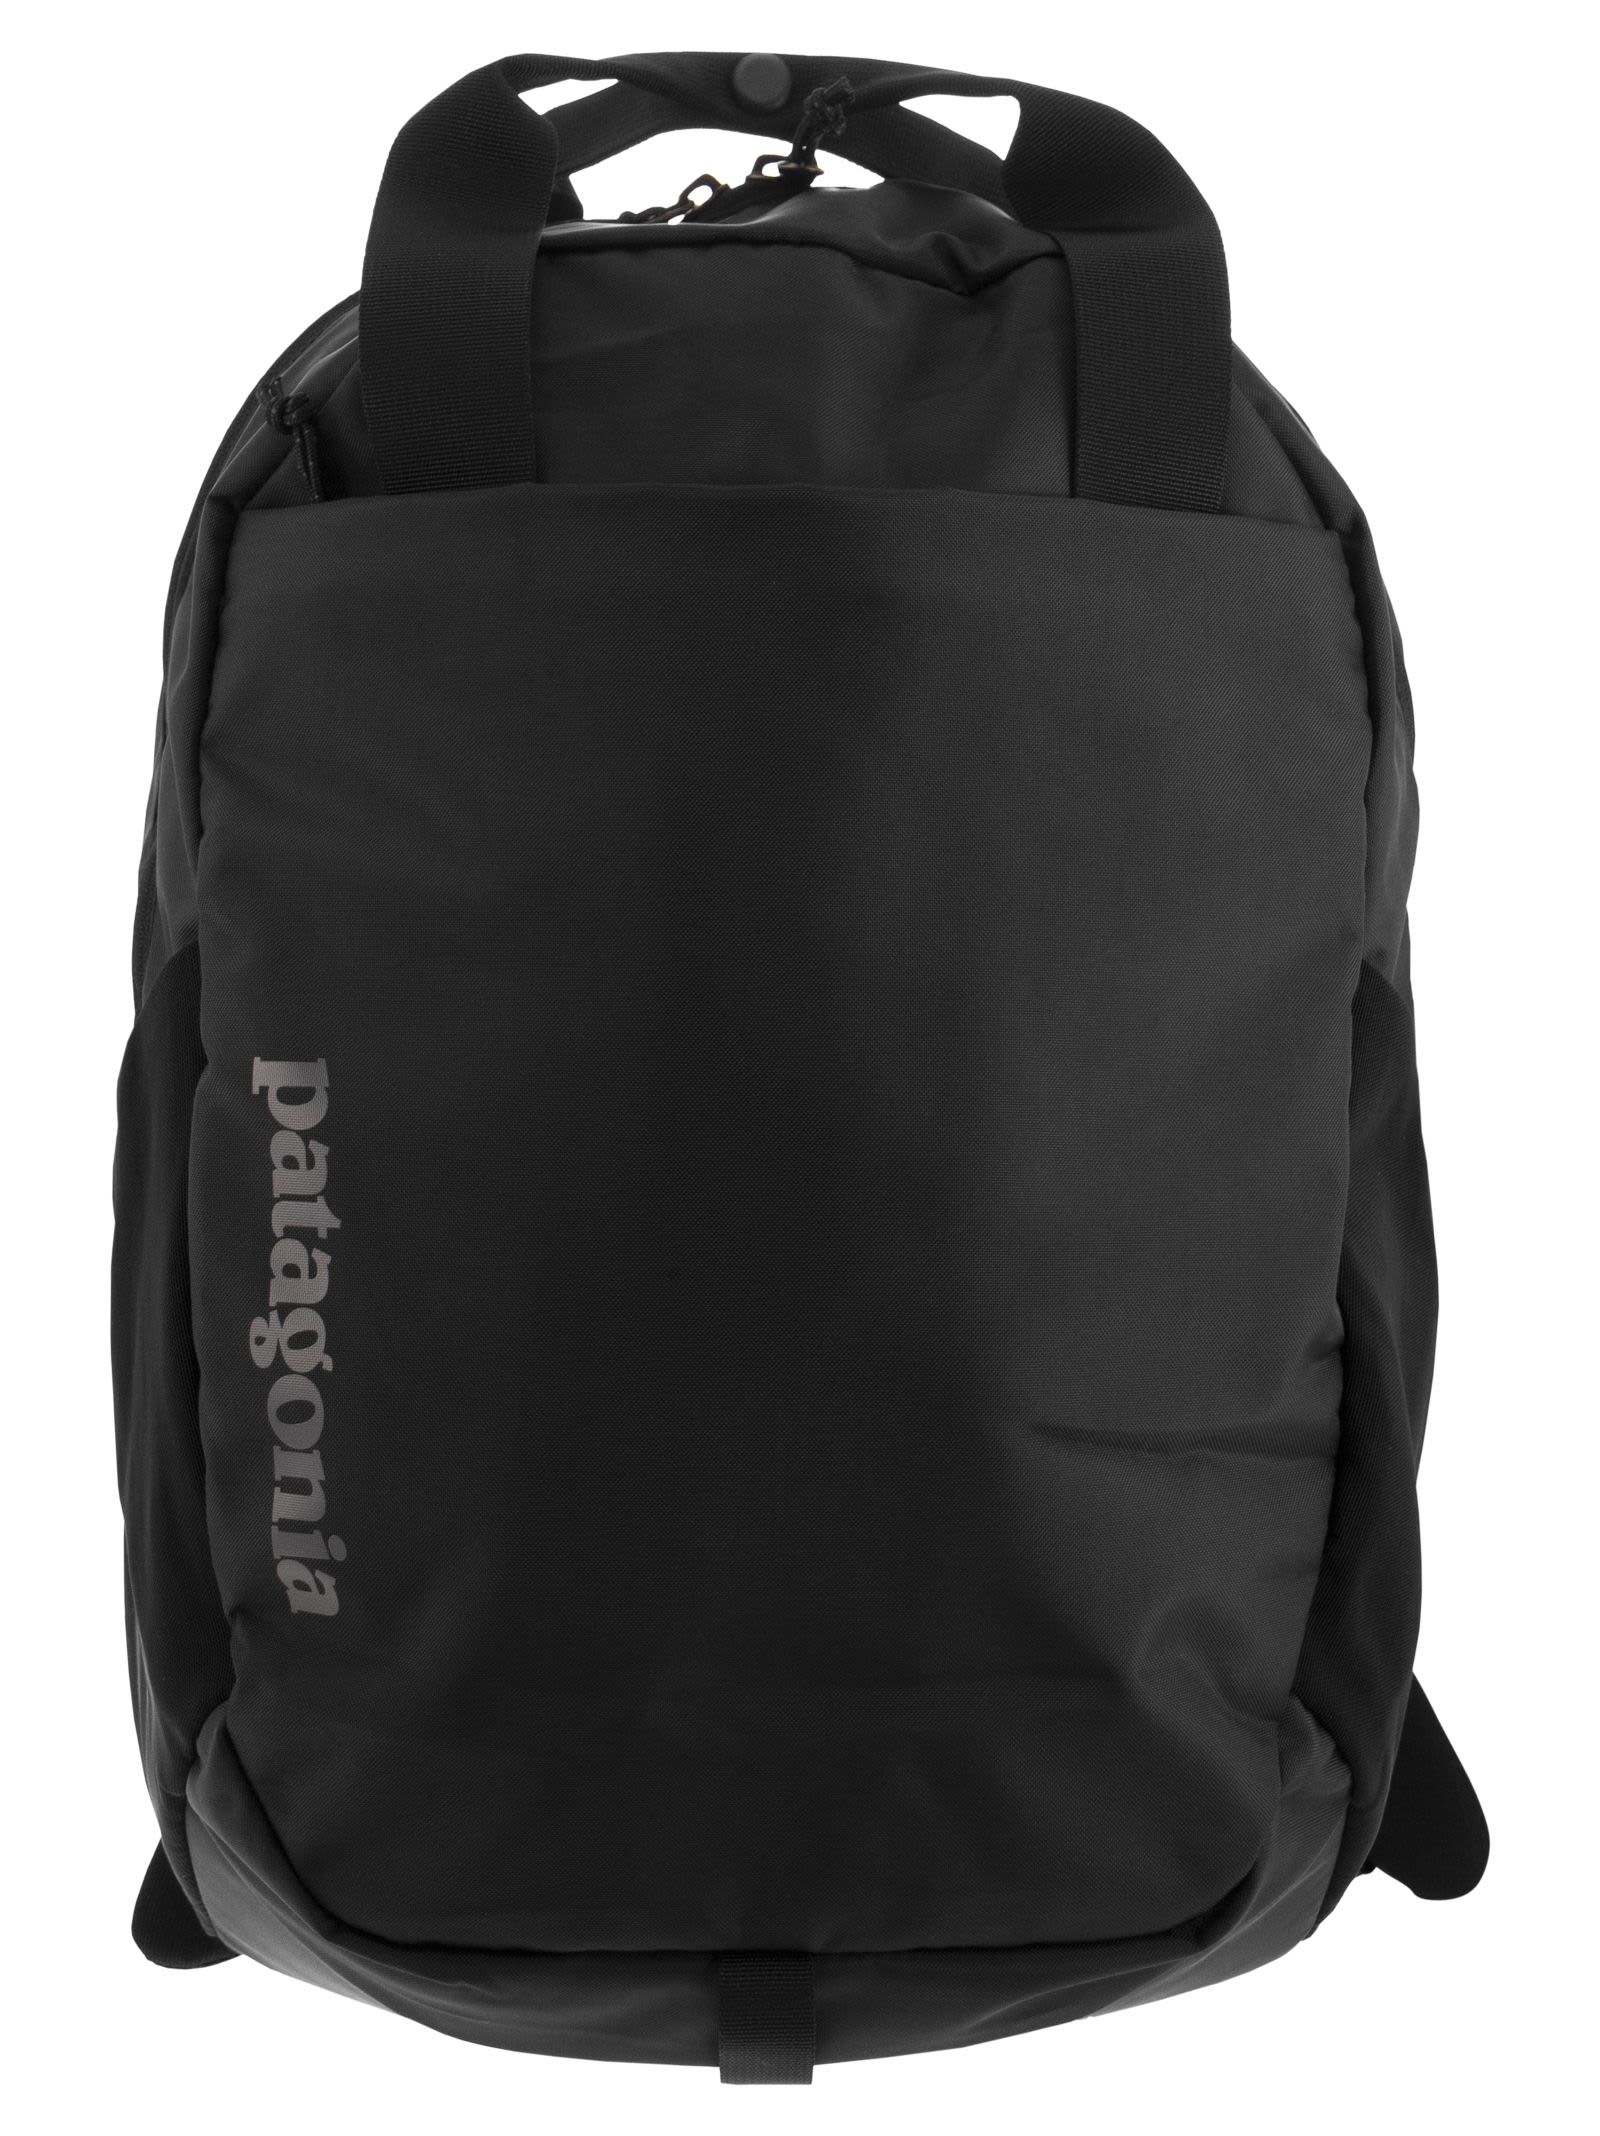 Patagonia Atom Tote - Backpack In Black